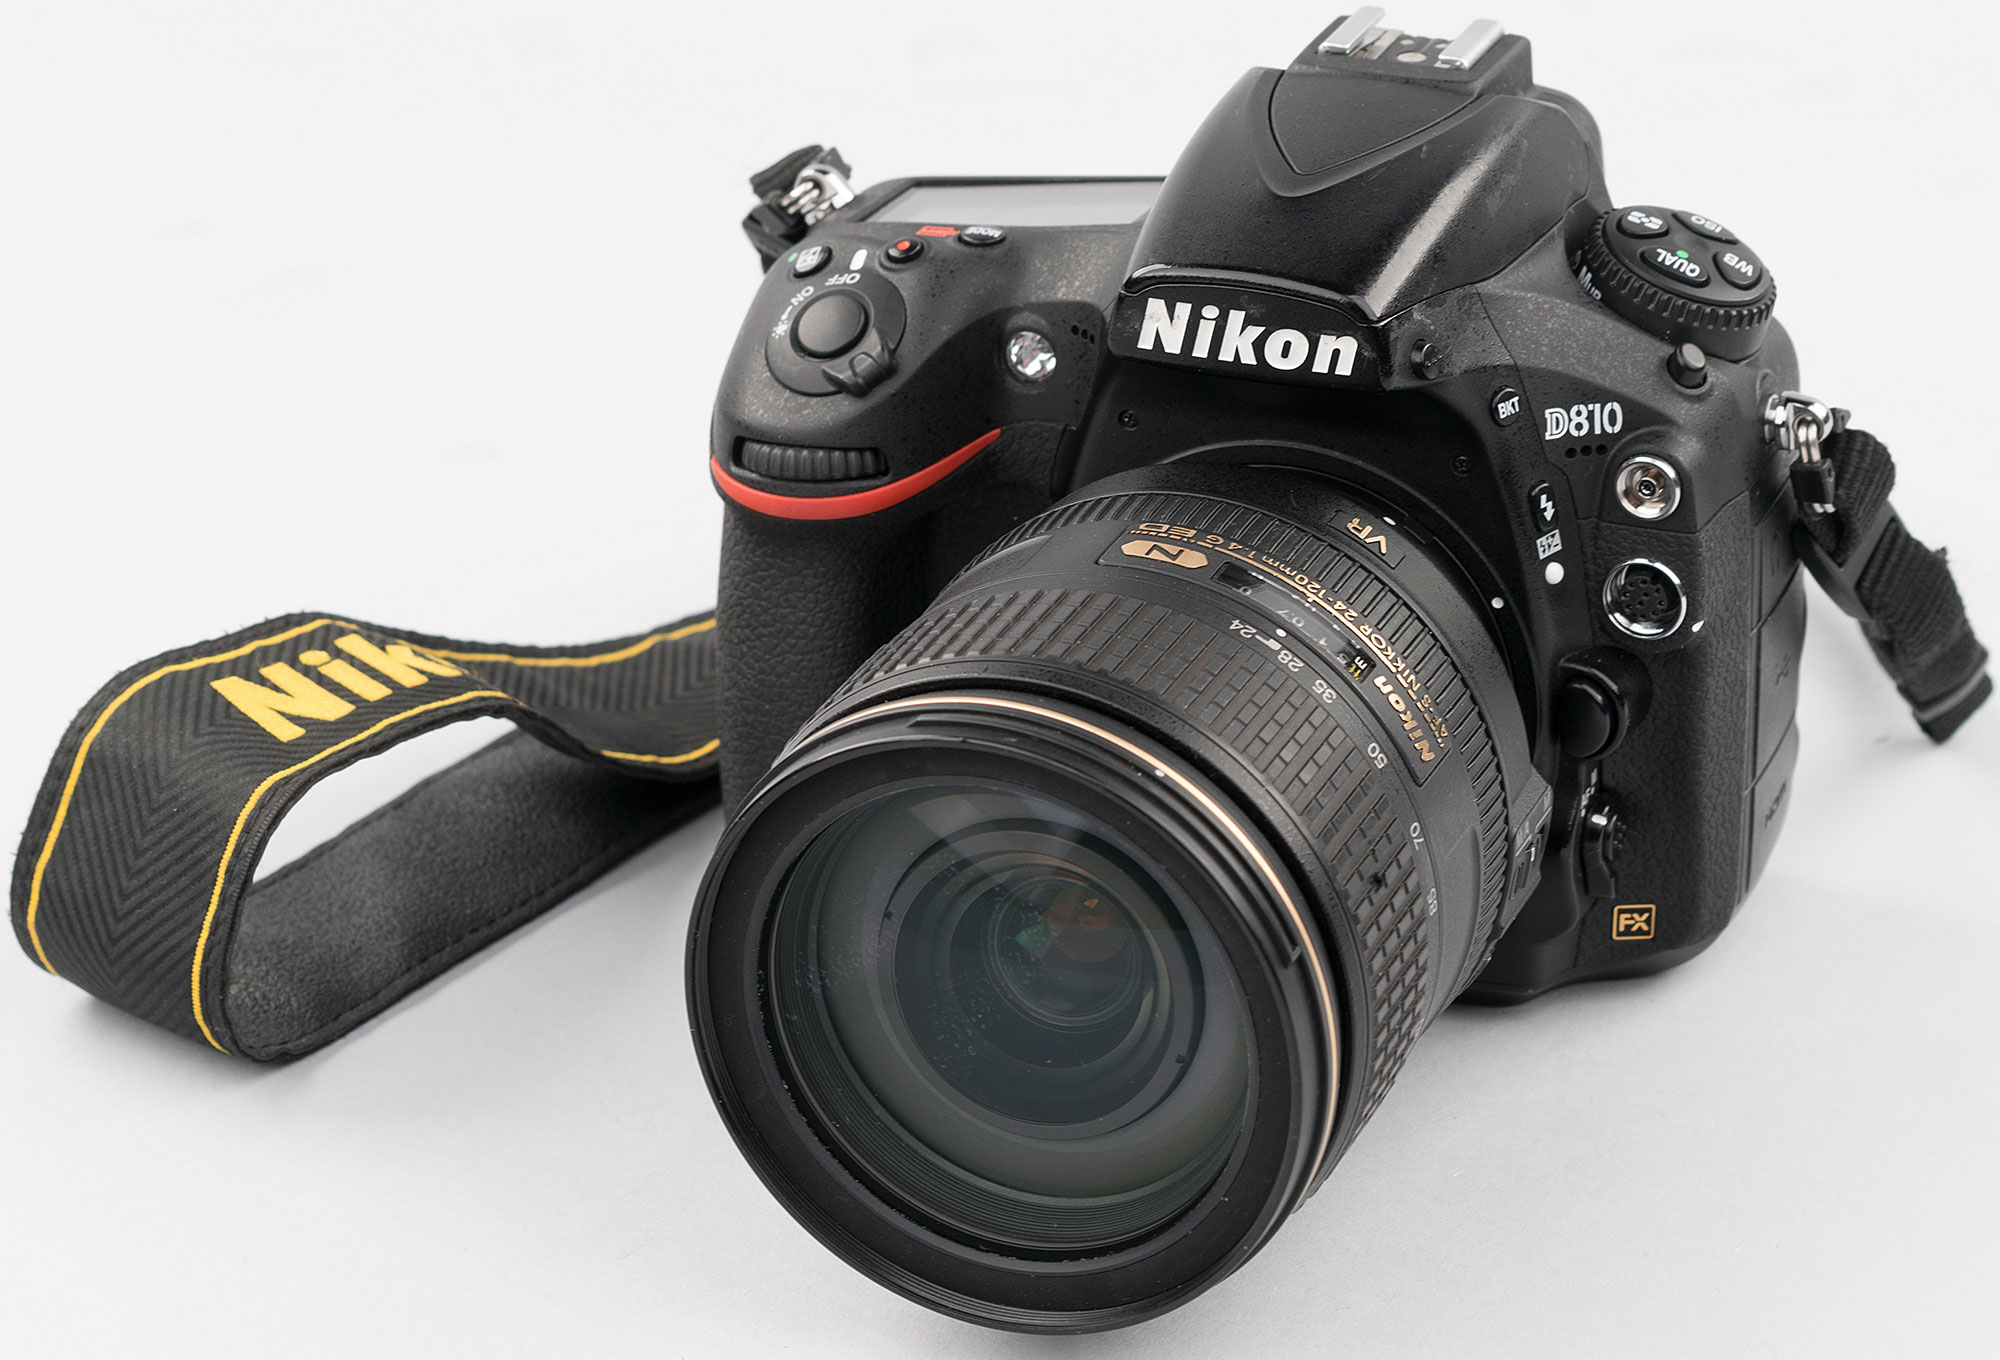 24 120mm f 4g ed vr. Nikkor 24-120mm f/4g ed VR. Nikon d780 Kit af-s Nikkor 24-120mm f/4g ed VR. Объектив Nikon s6150.